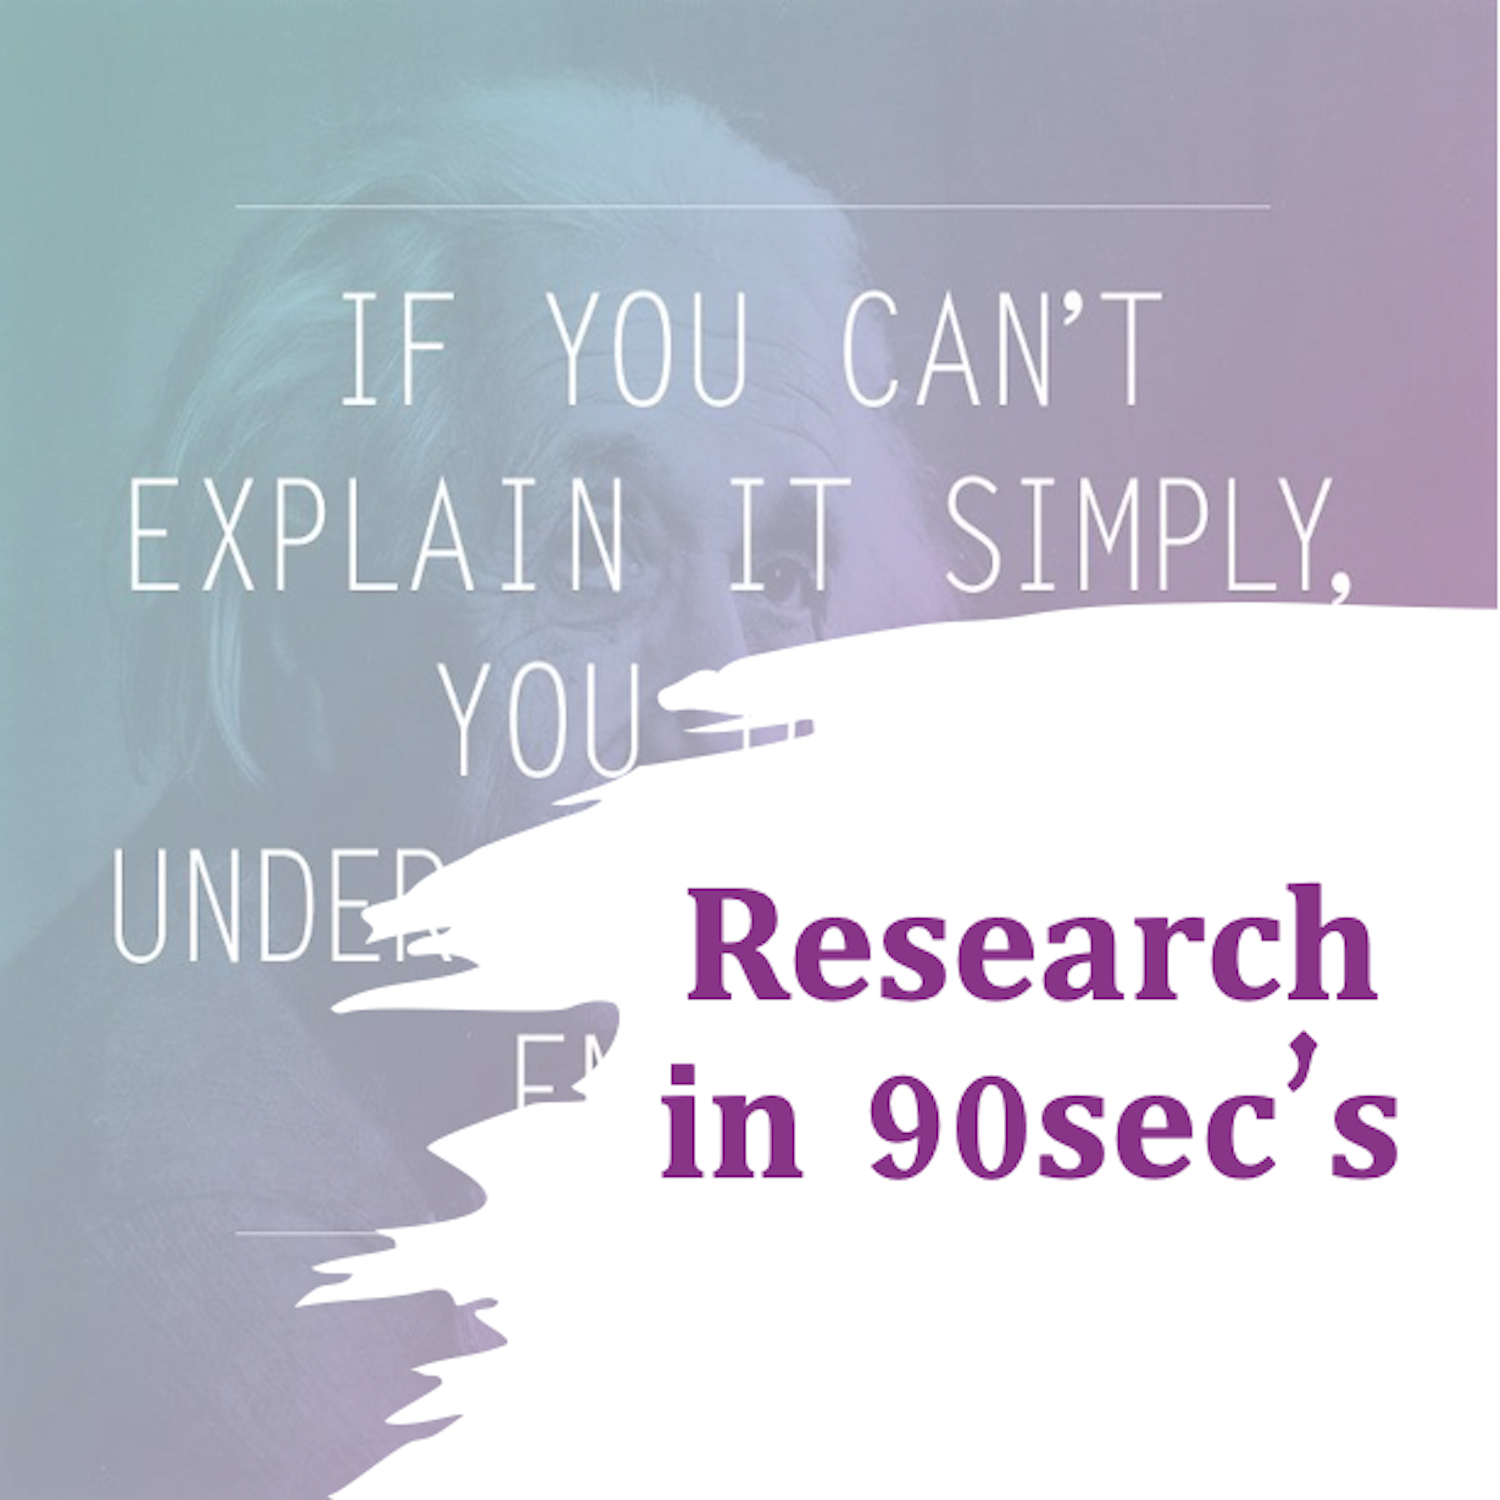 Research in 90sec’s